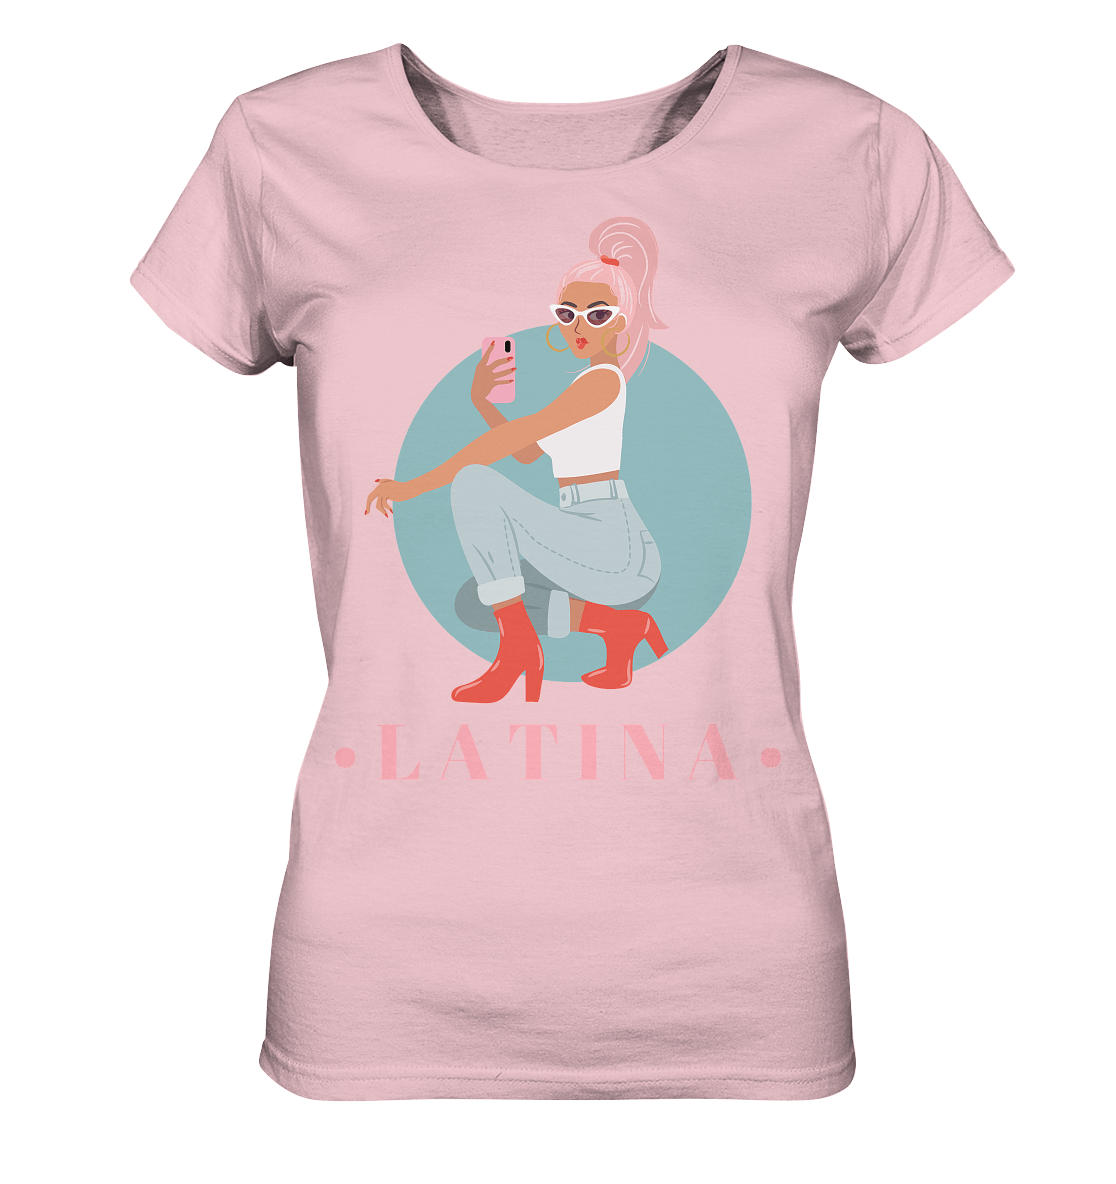 Latina Damen Shirt in rosa mit latina girl illustration